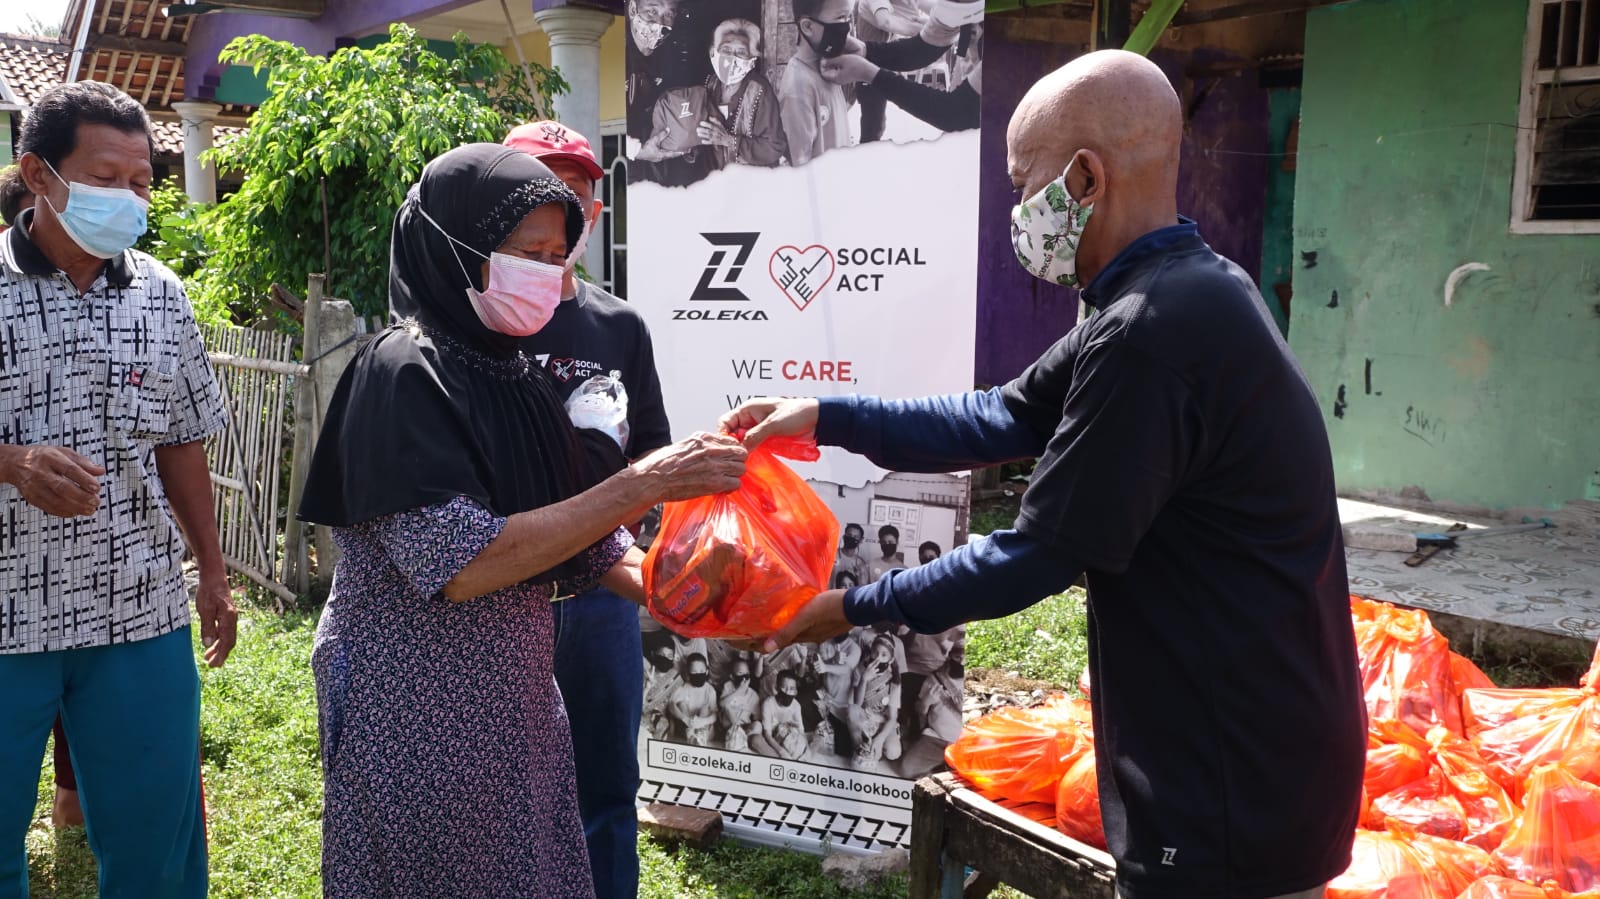 Brand Zoleka membagikan sembako dalam kegiatan sosial act di Kabupaten Bekasi